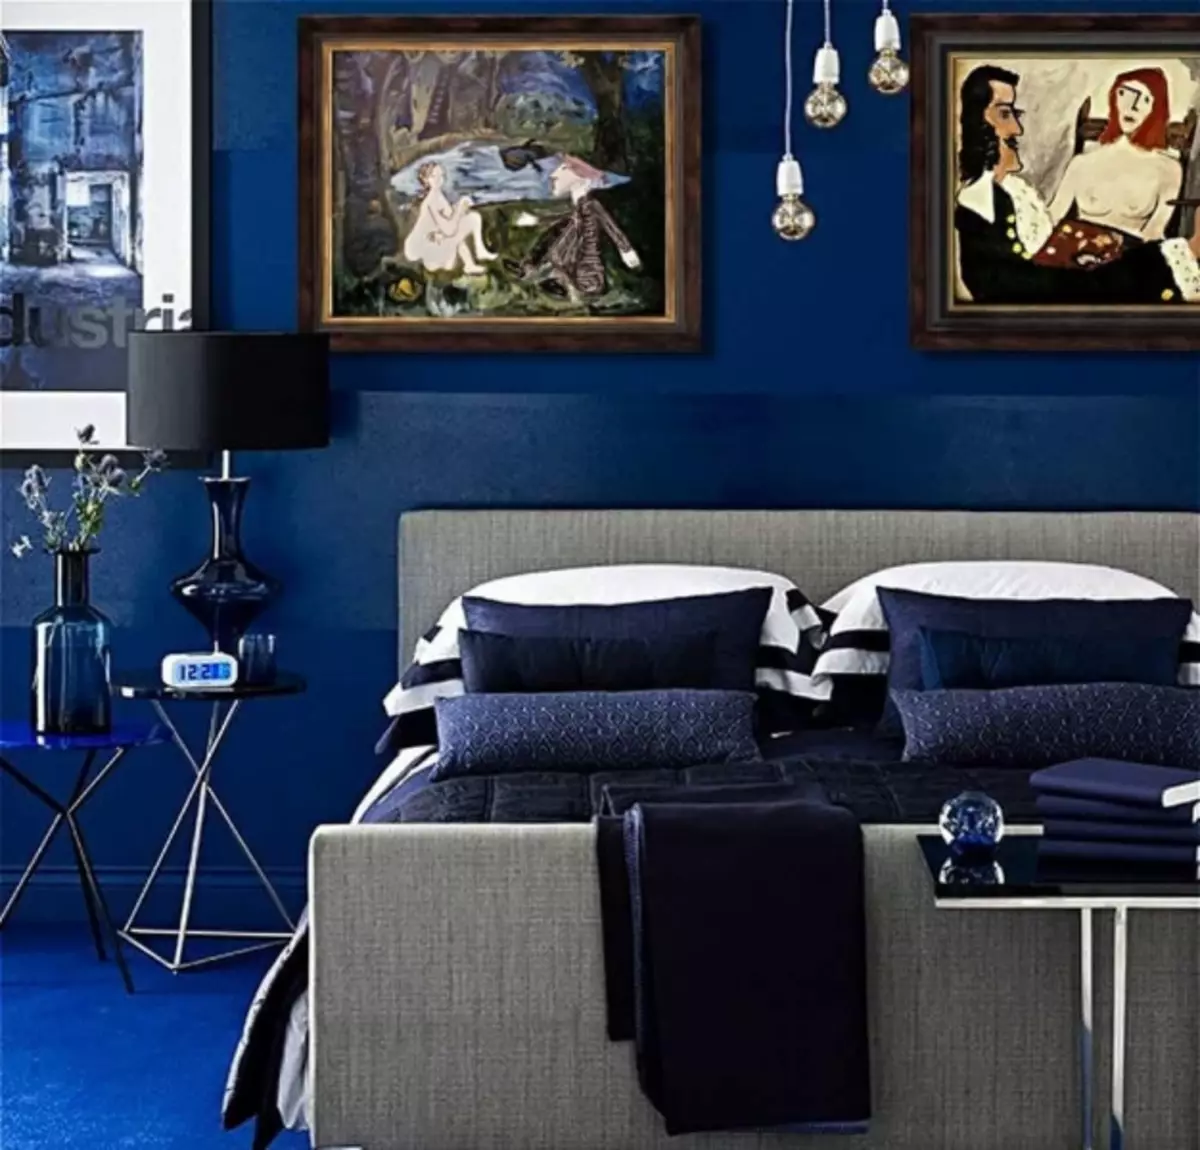 Blue Wallpaper: litrato alang sa kuta, diha sa sulod, mangitngit nga kolor, puti nga background, lawak sa bulawan, itom sa mga bulak, gray, sa azul, nga lunhaw, video